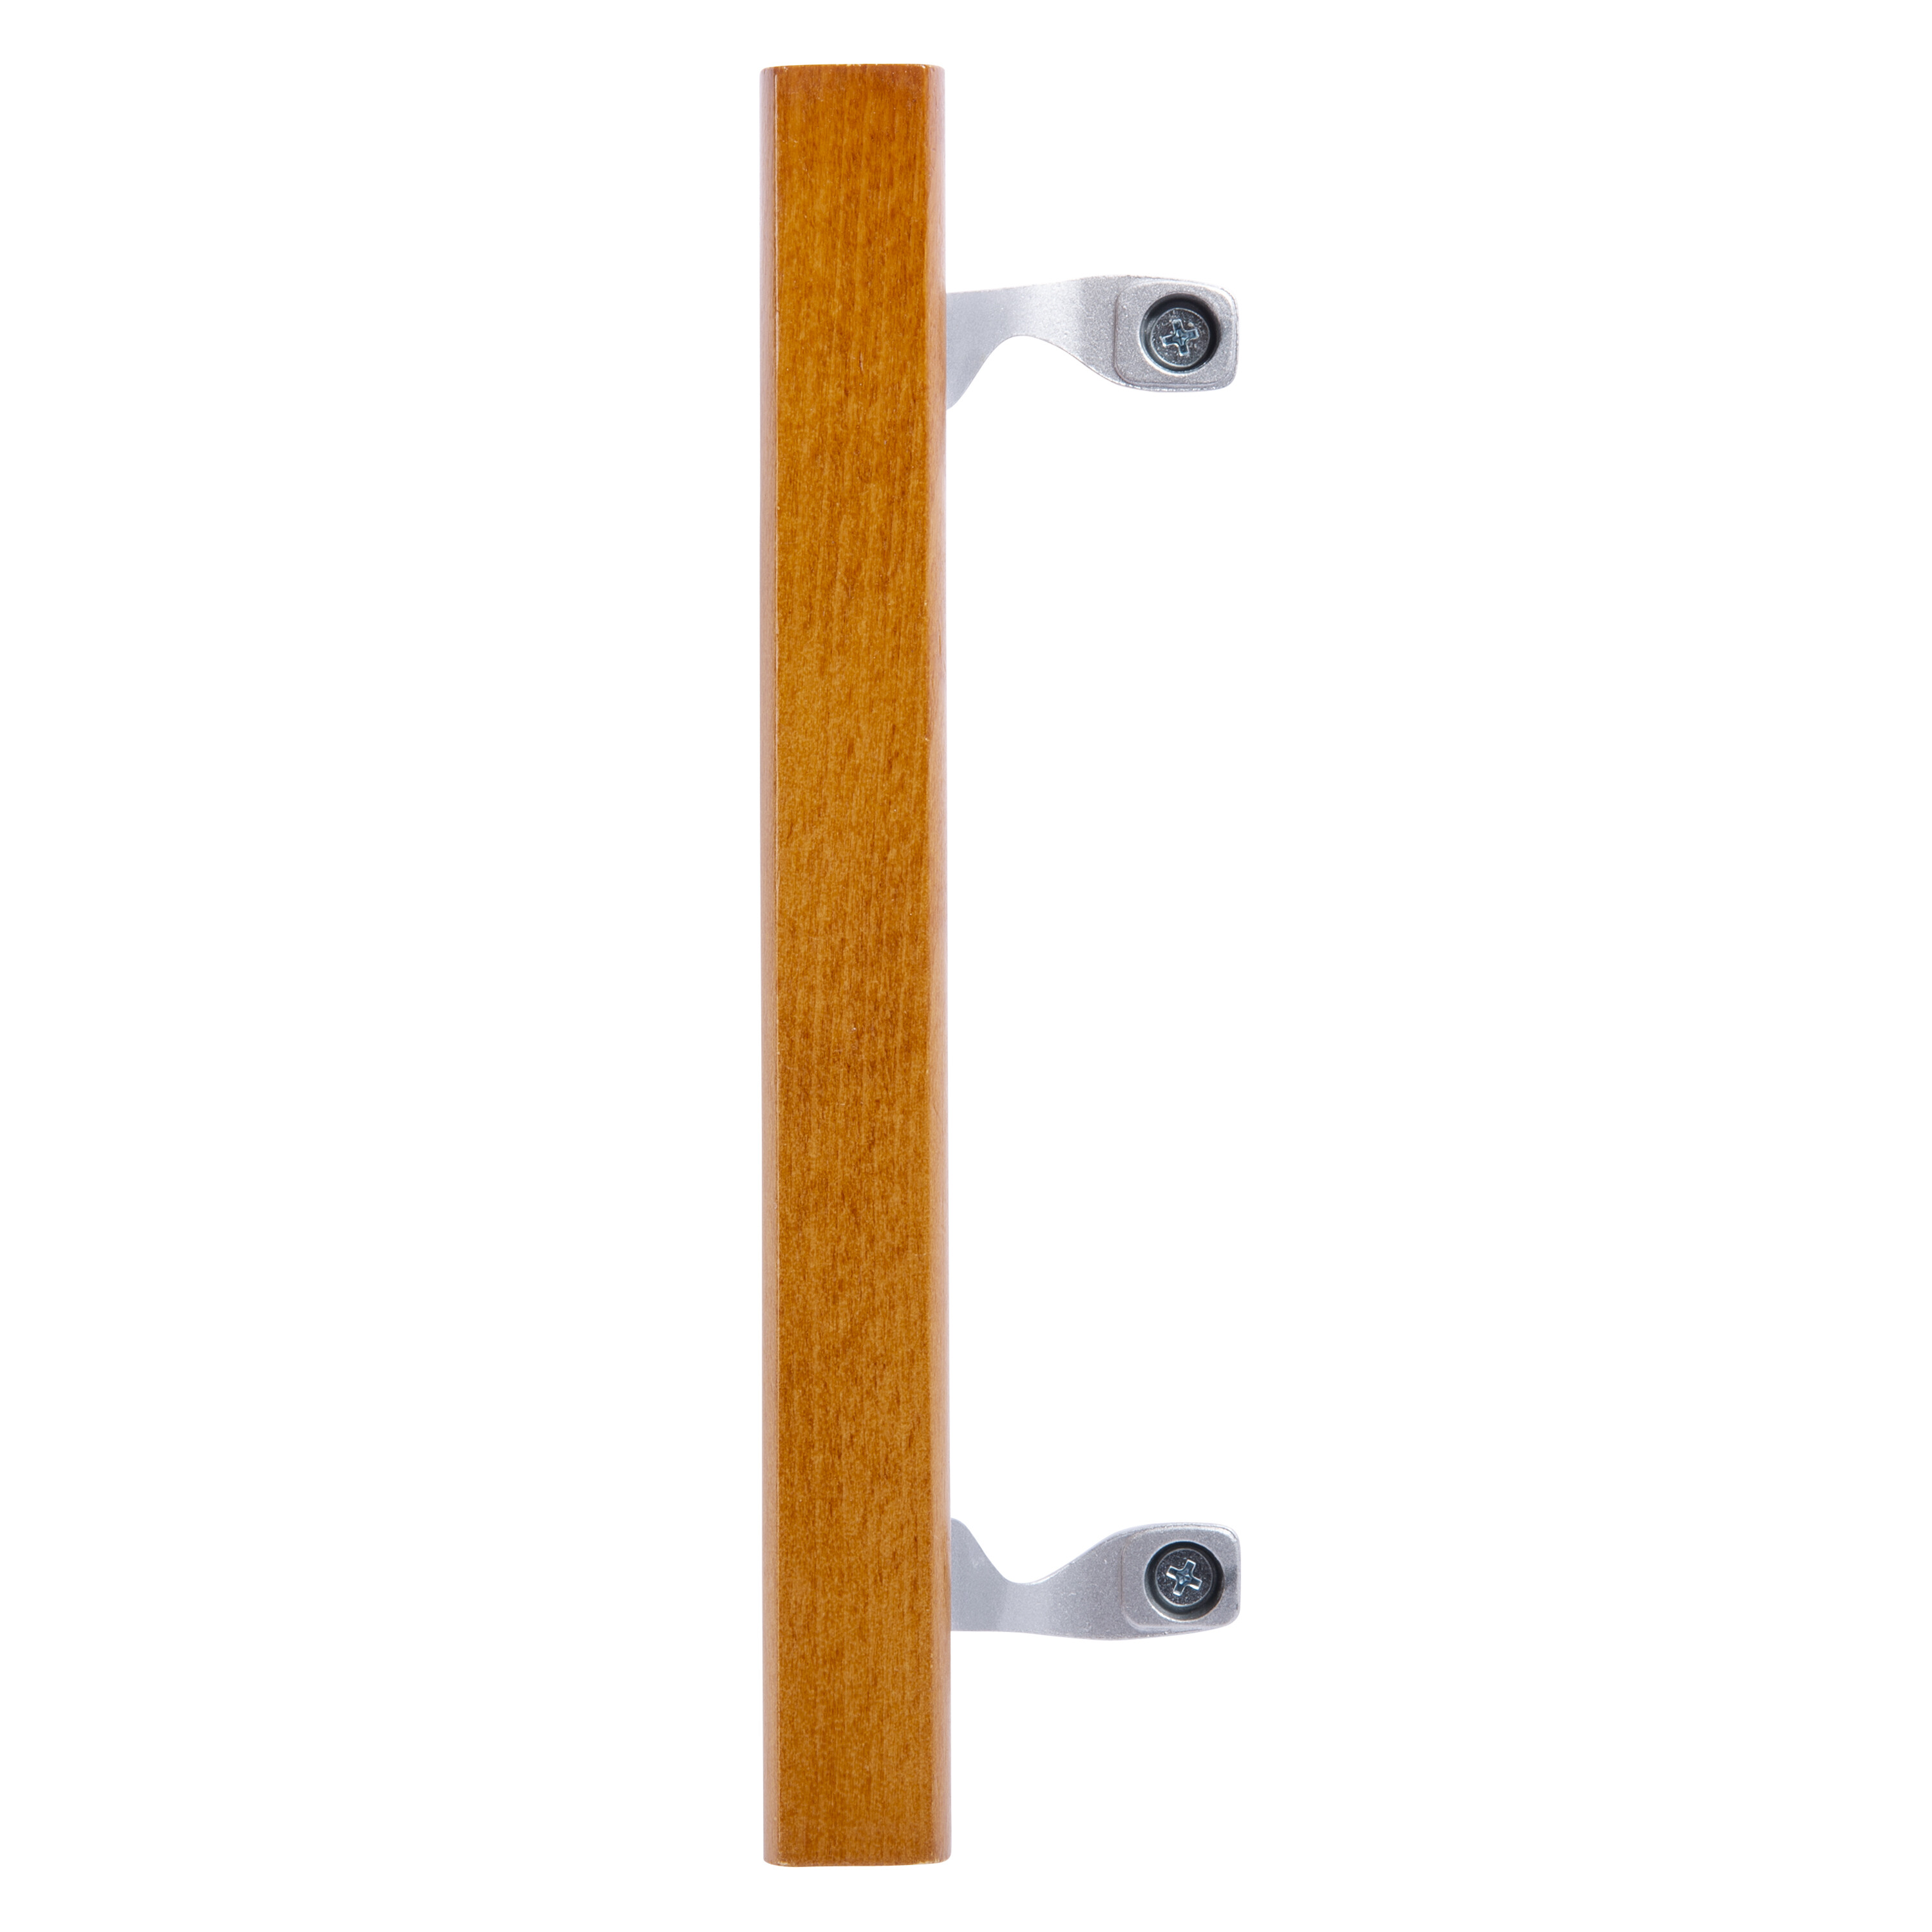 Wood Patio Door Hardware